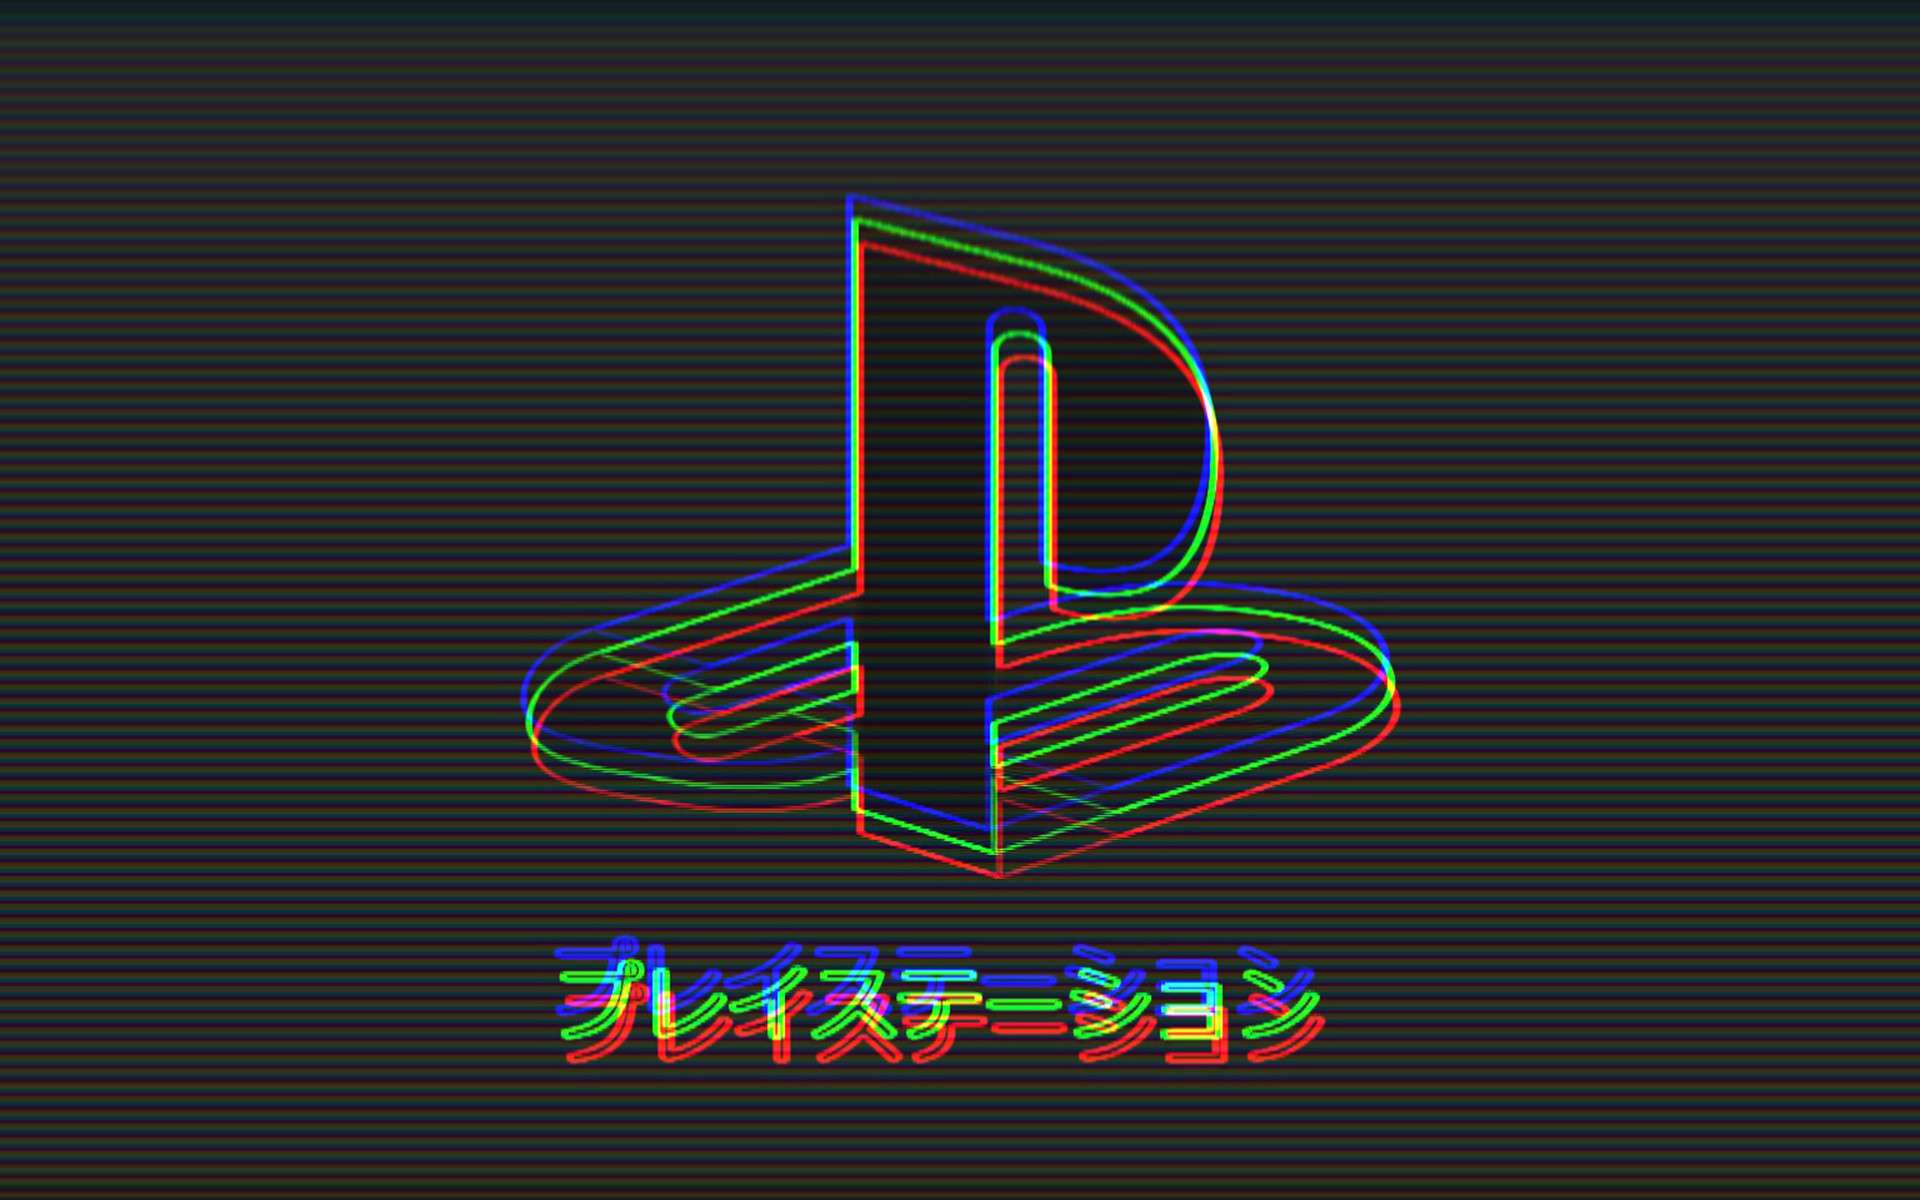 Playstation Logo Wallpaper by dantescottie on DeviantArt